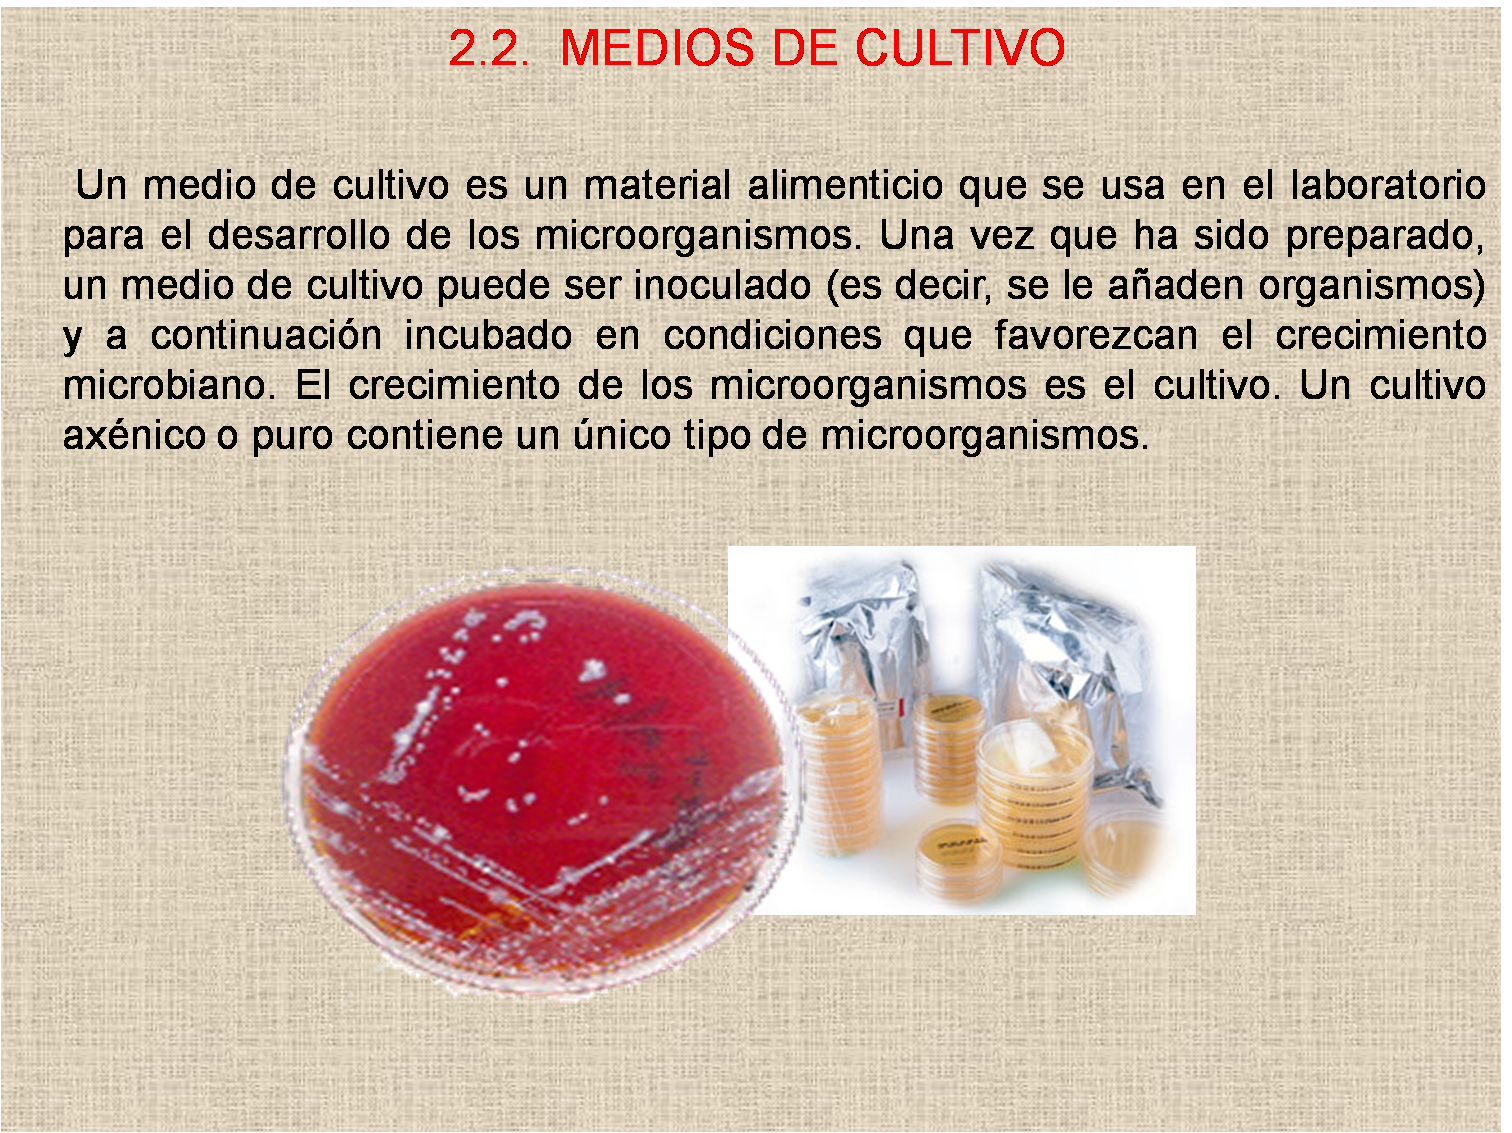 Medios De Cultivo Cuadro Comparativo Microbiologia Medica Medio Images